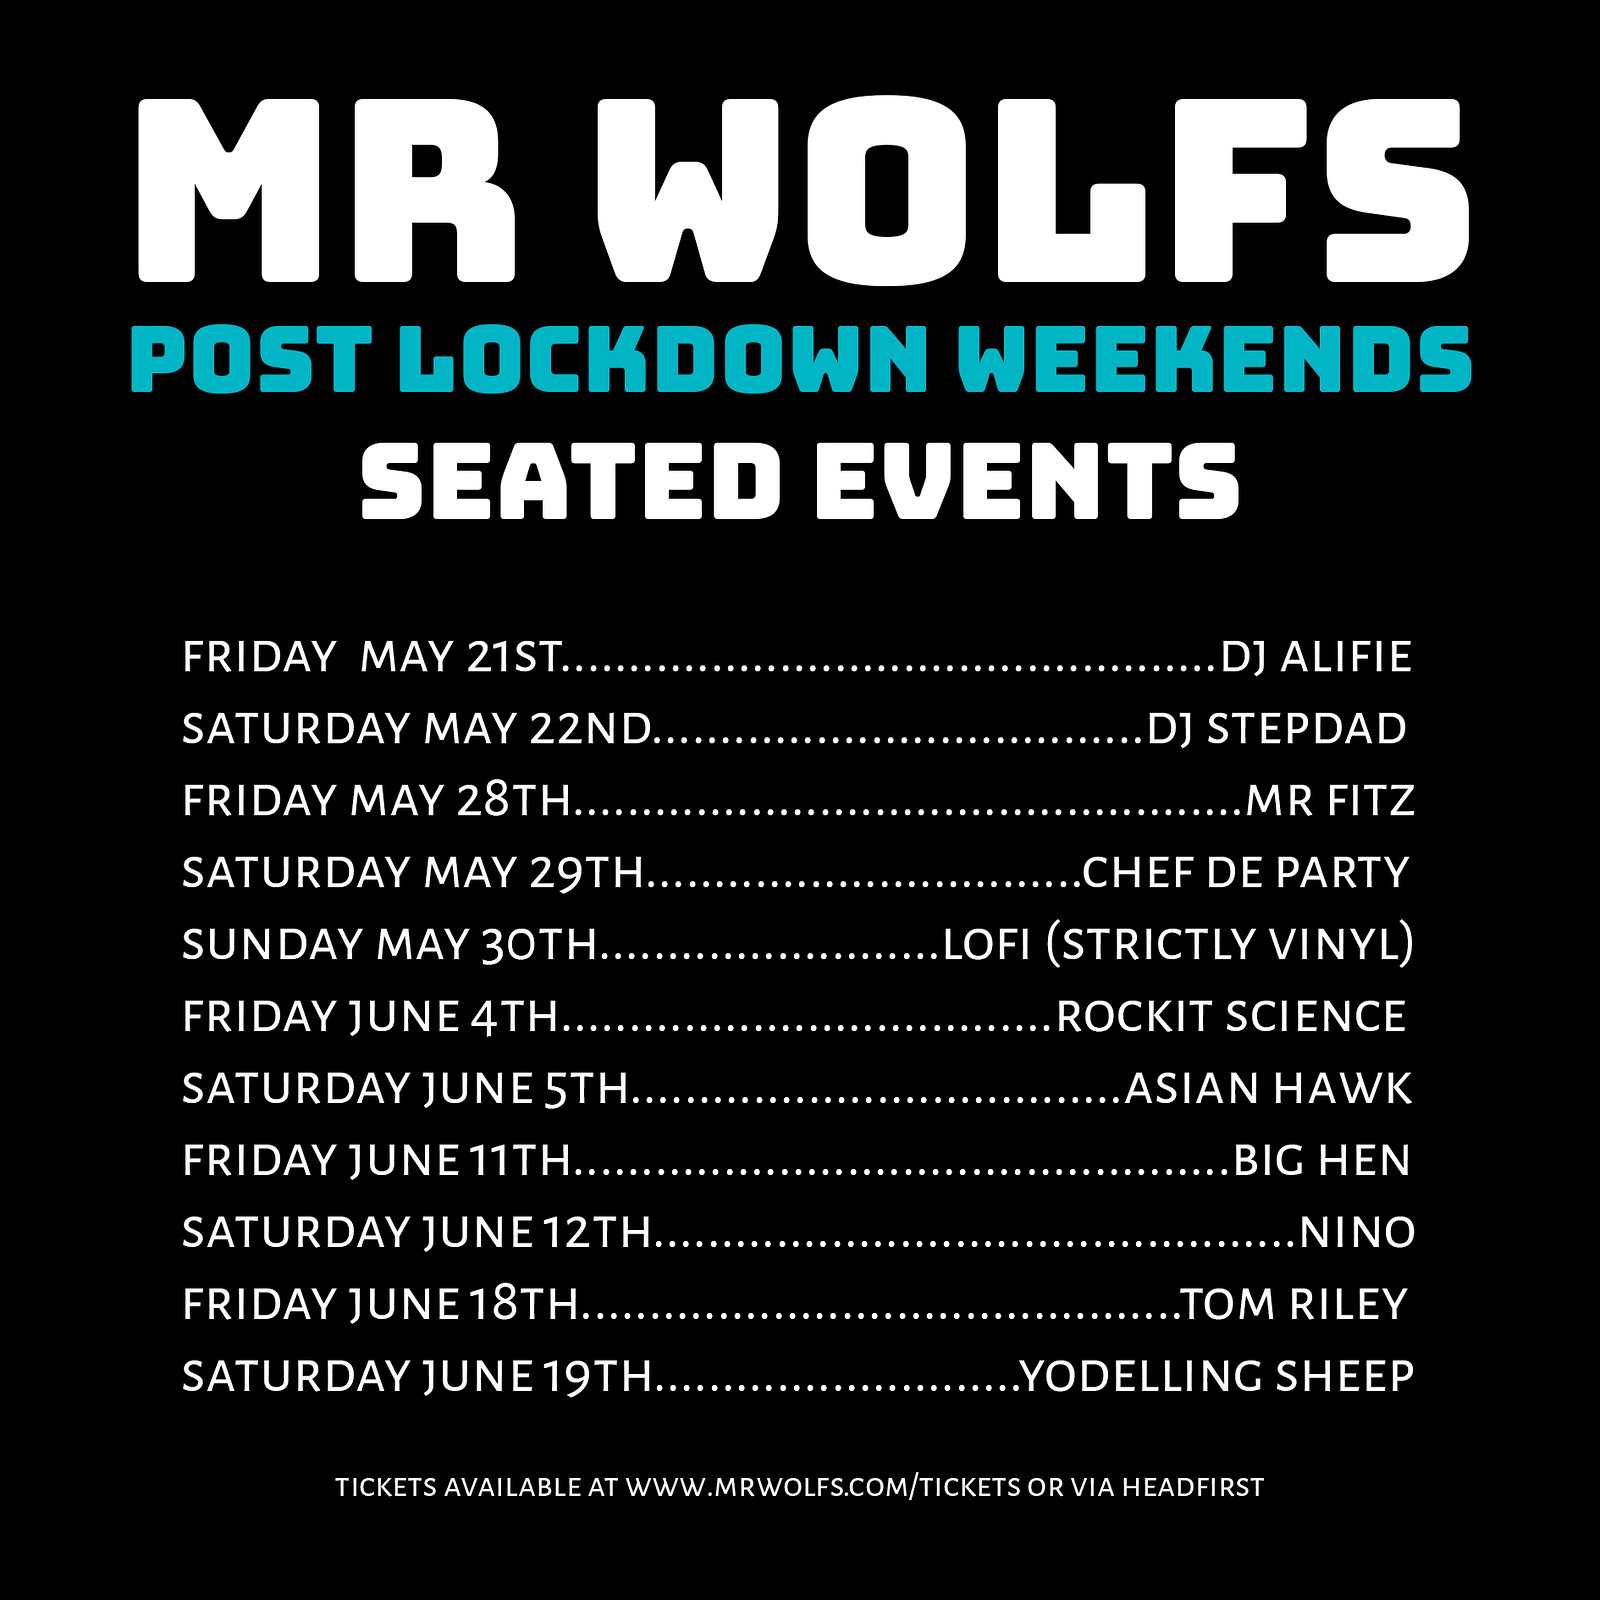 Mr Wolfs Post Lockdown Weekends w/ DJ Alfie at Mr Wolfs